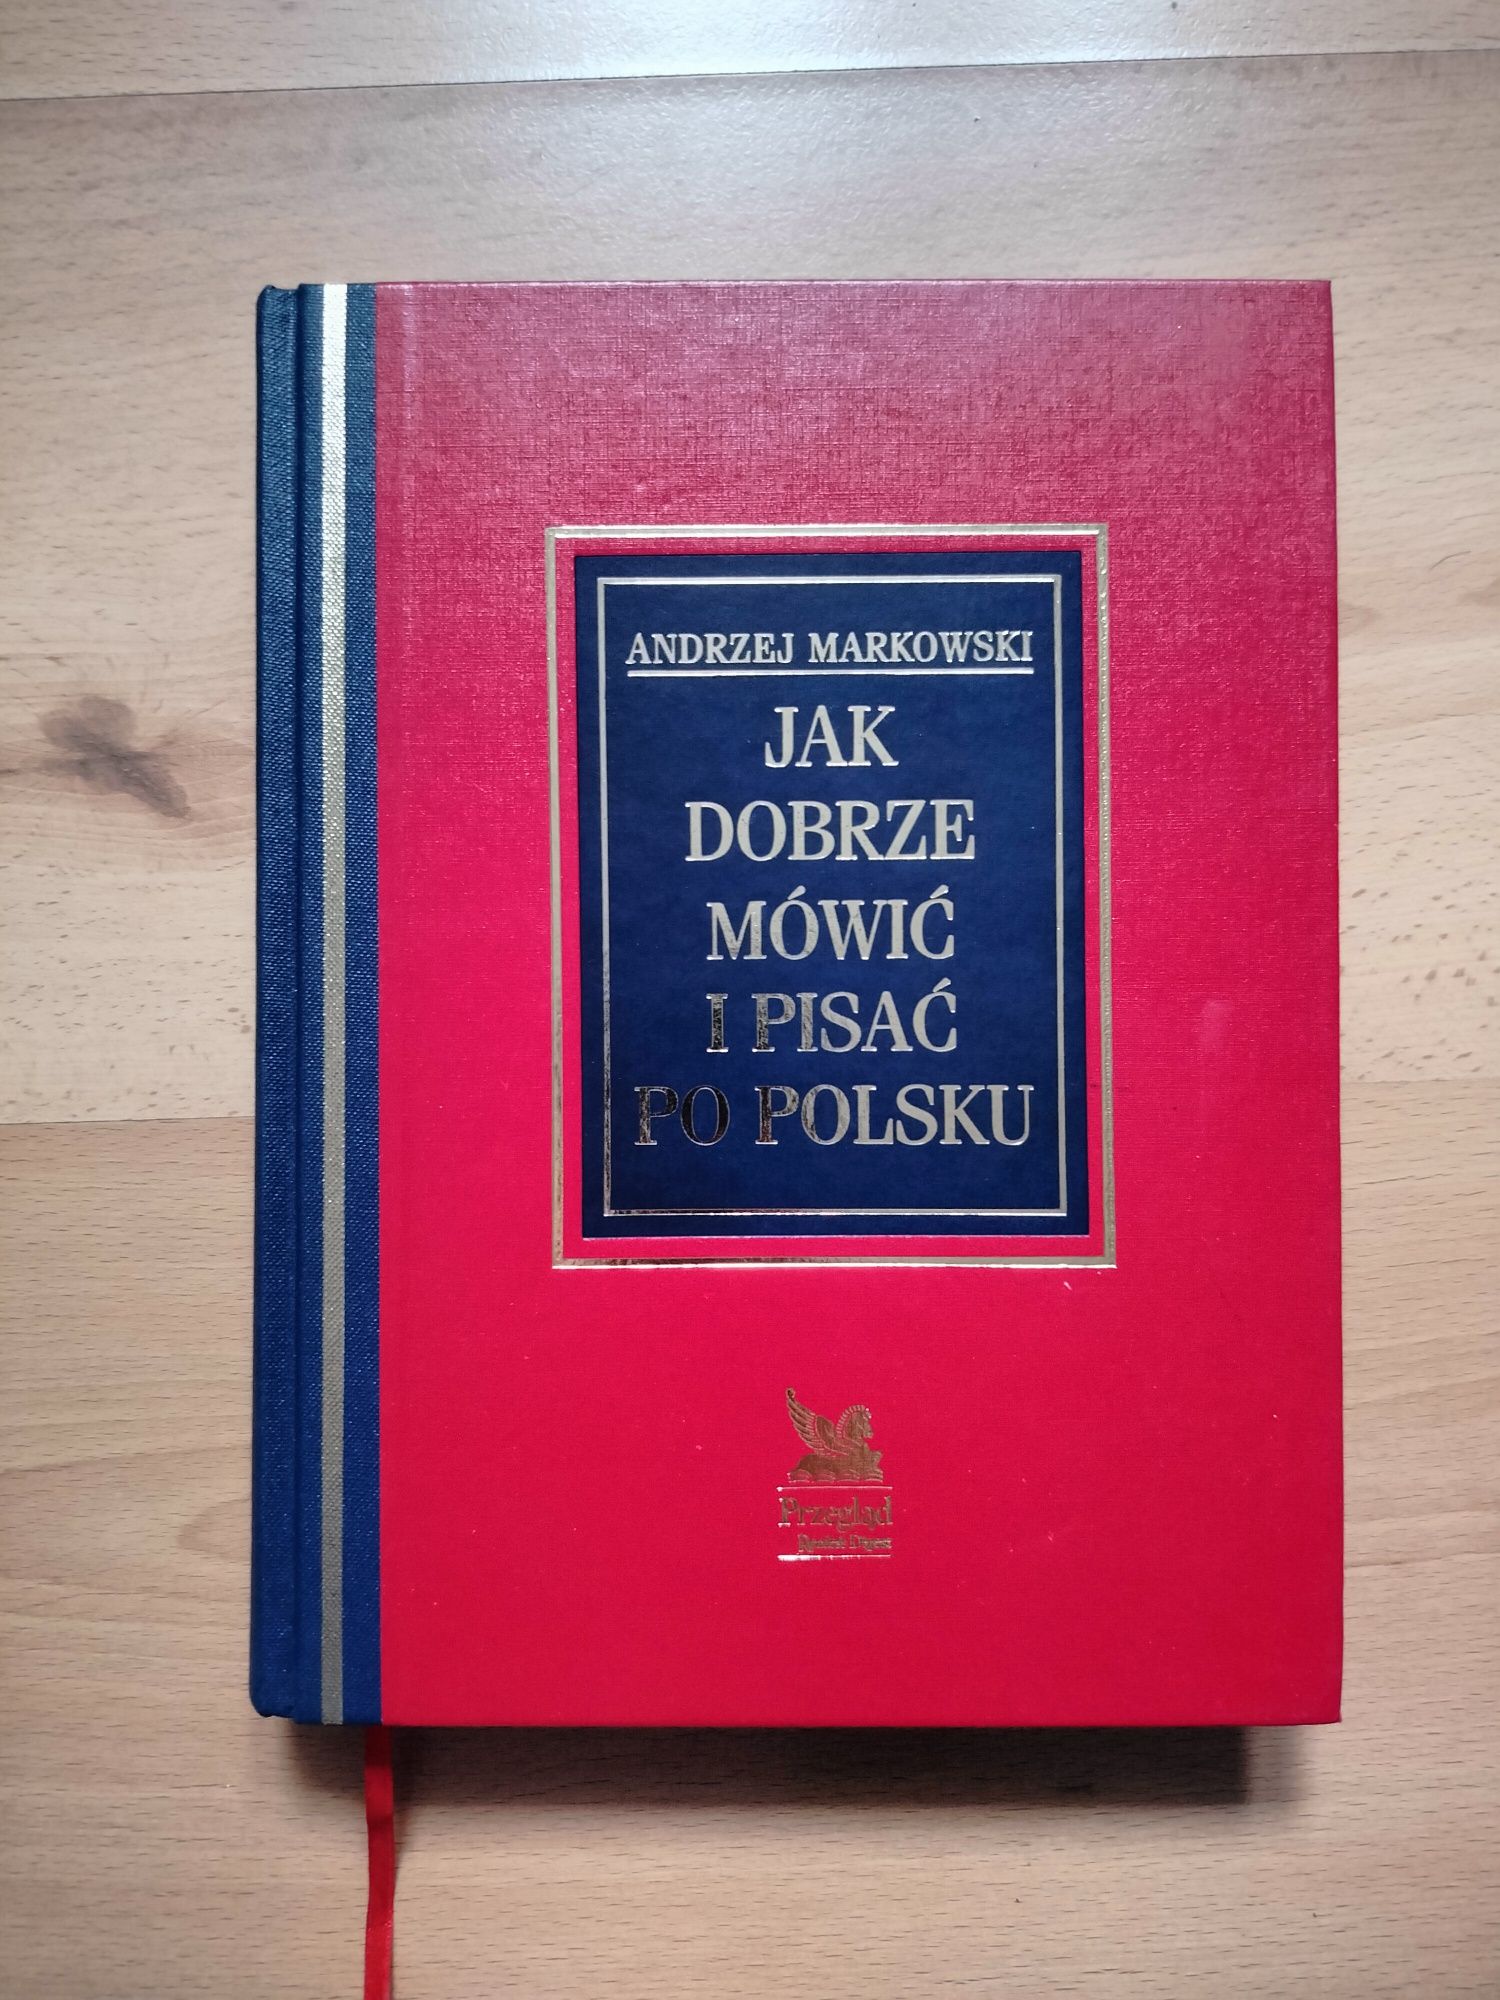 Andrzej Markowski "Jak dobrze mówić i pisać po polsku"